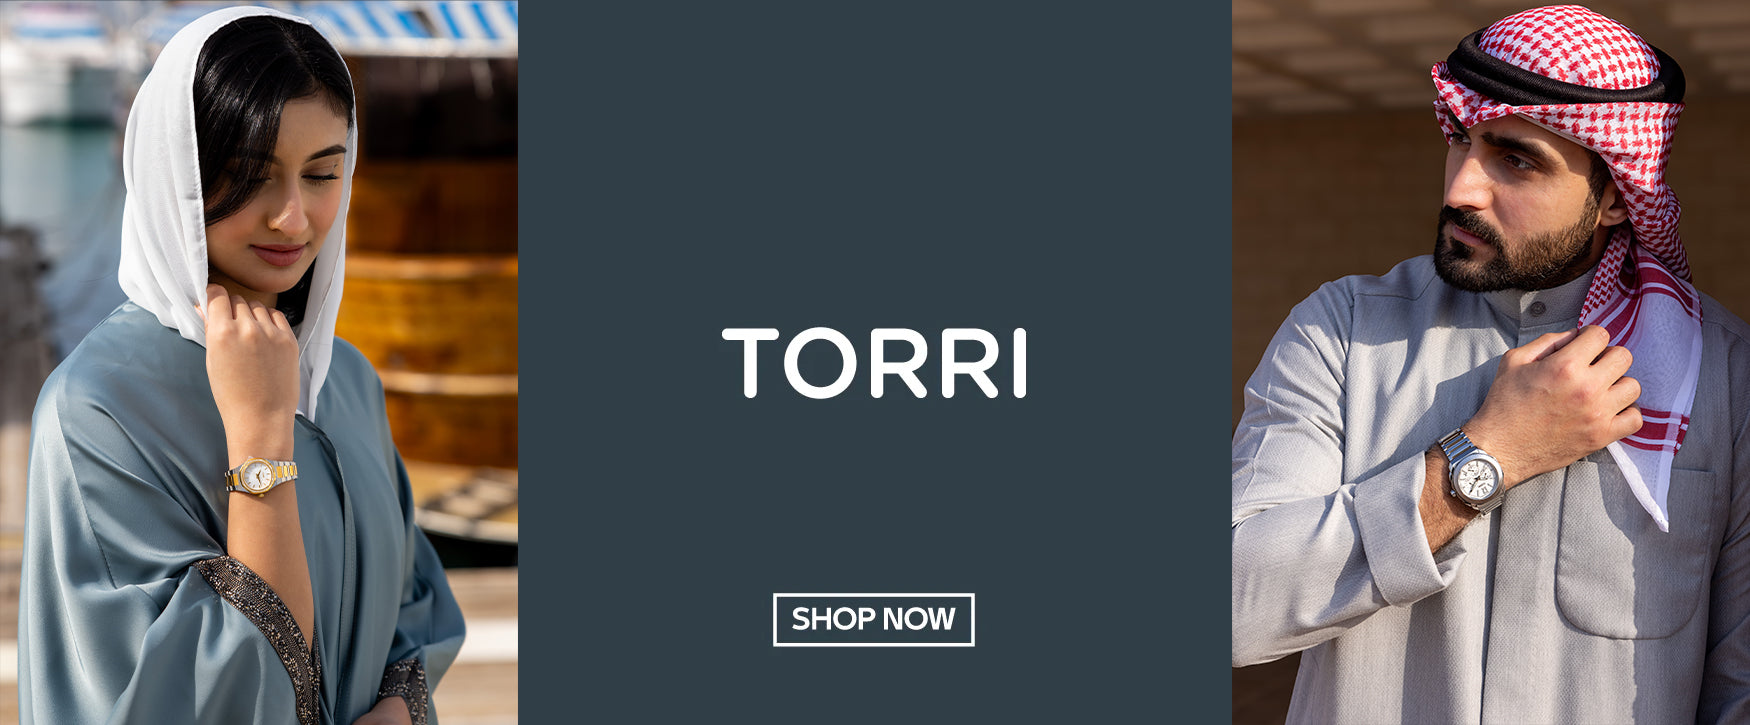 torri